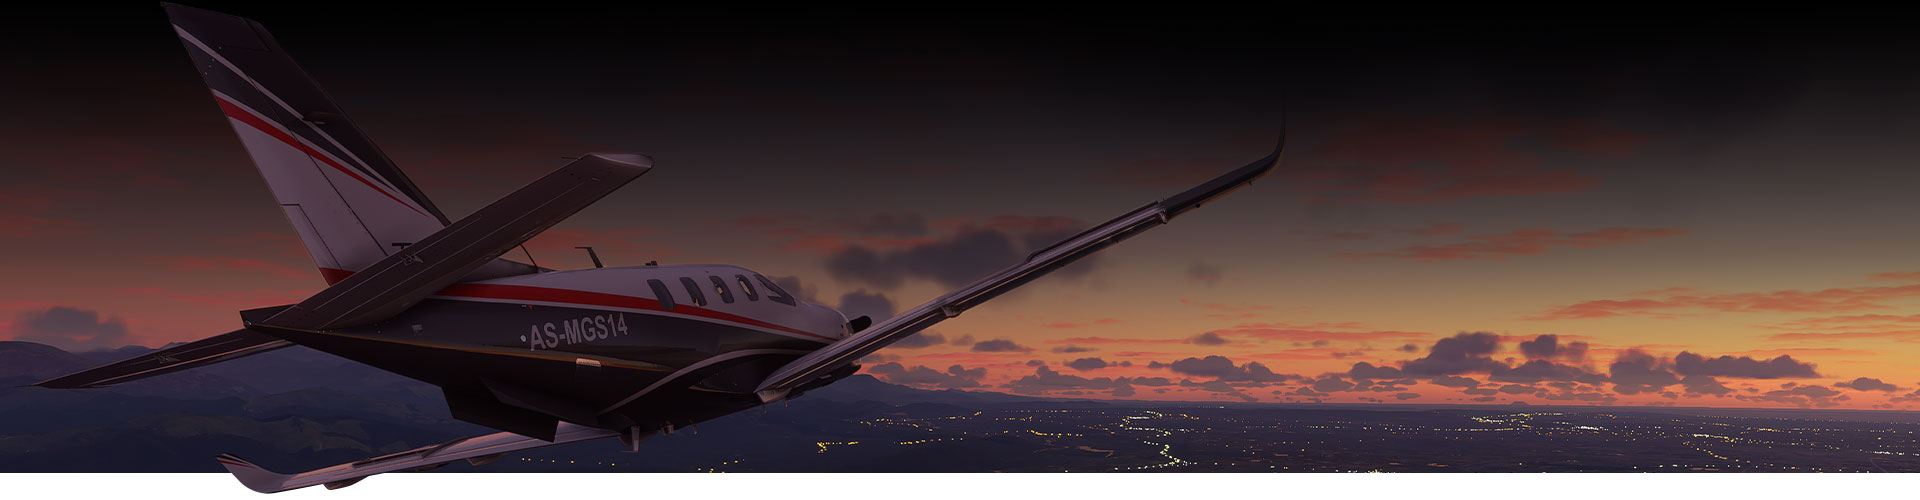 Самолет из Microsoft Flight Simulator летит над городом на закате